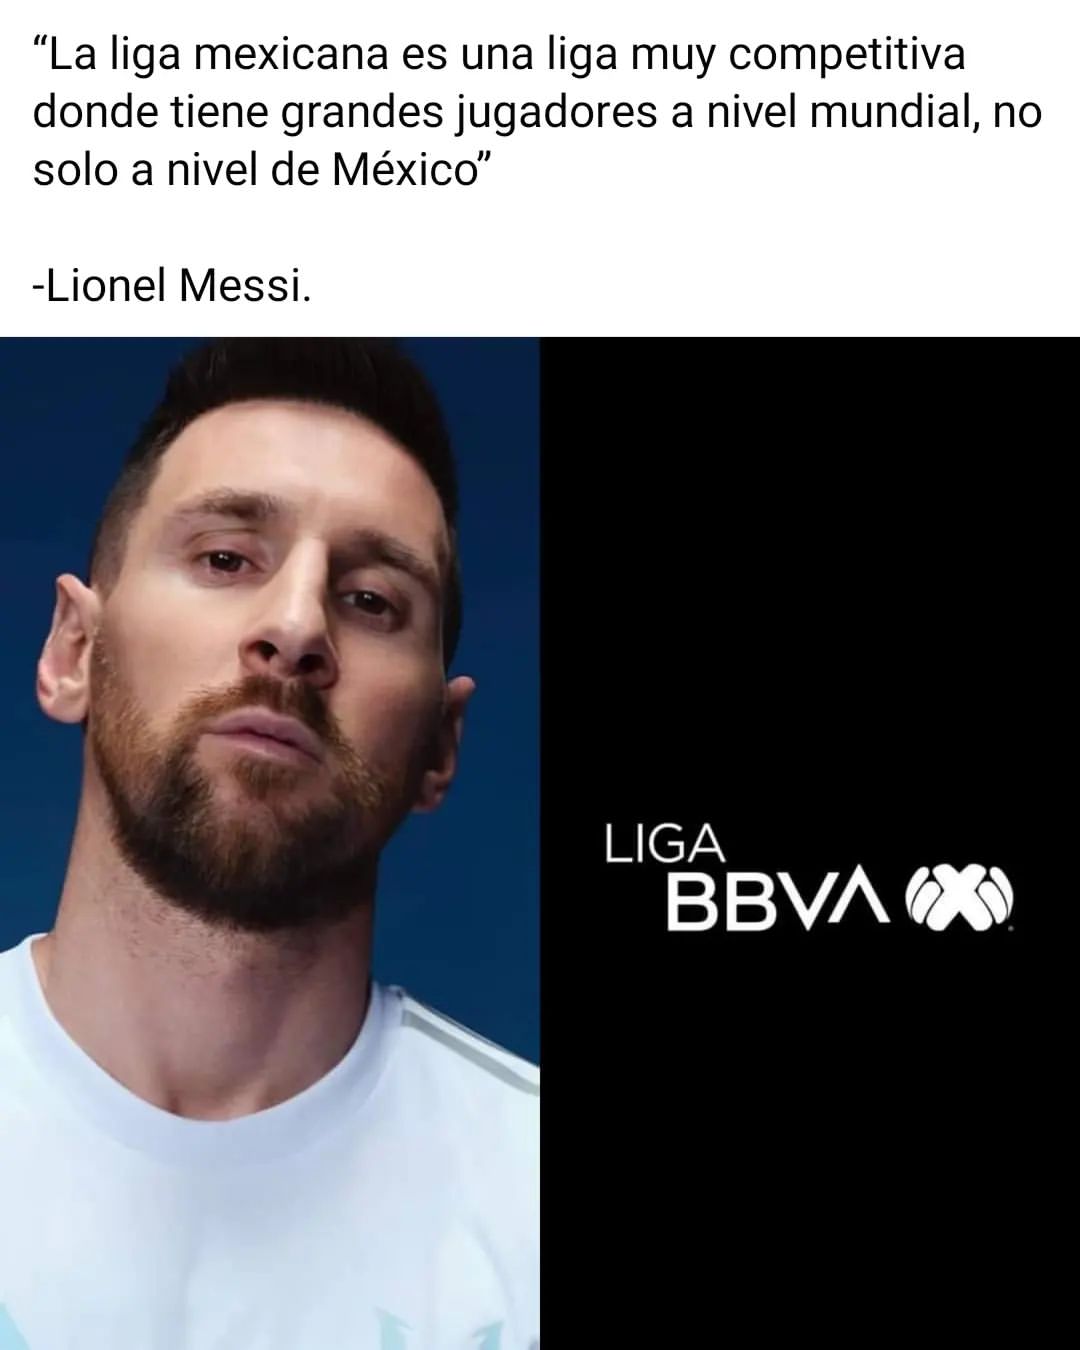 "La liga mexicana es una liga muy competitiva donde tiene grandes jugadores a nivel mundial, no solo a nivel de México". Lionel Messi.